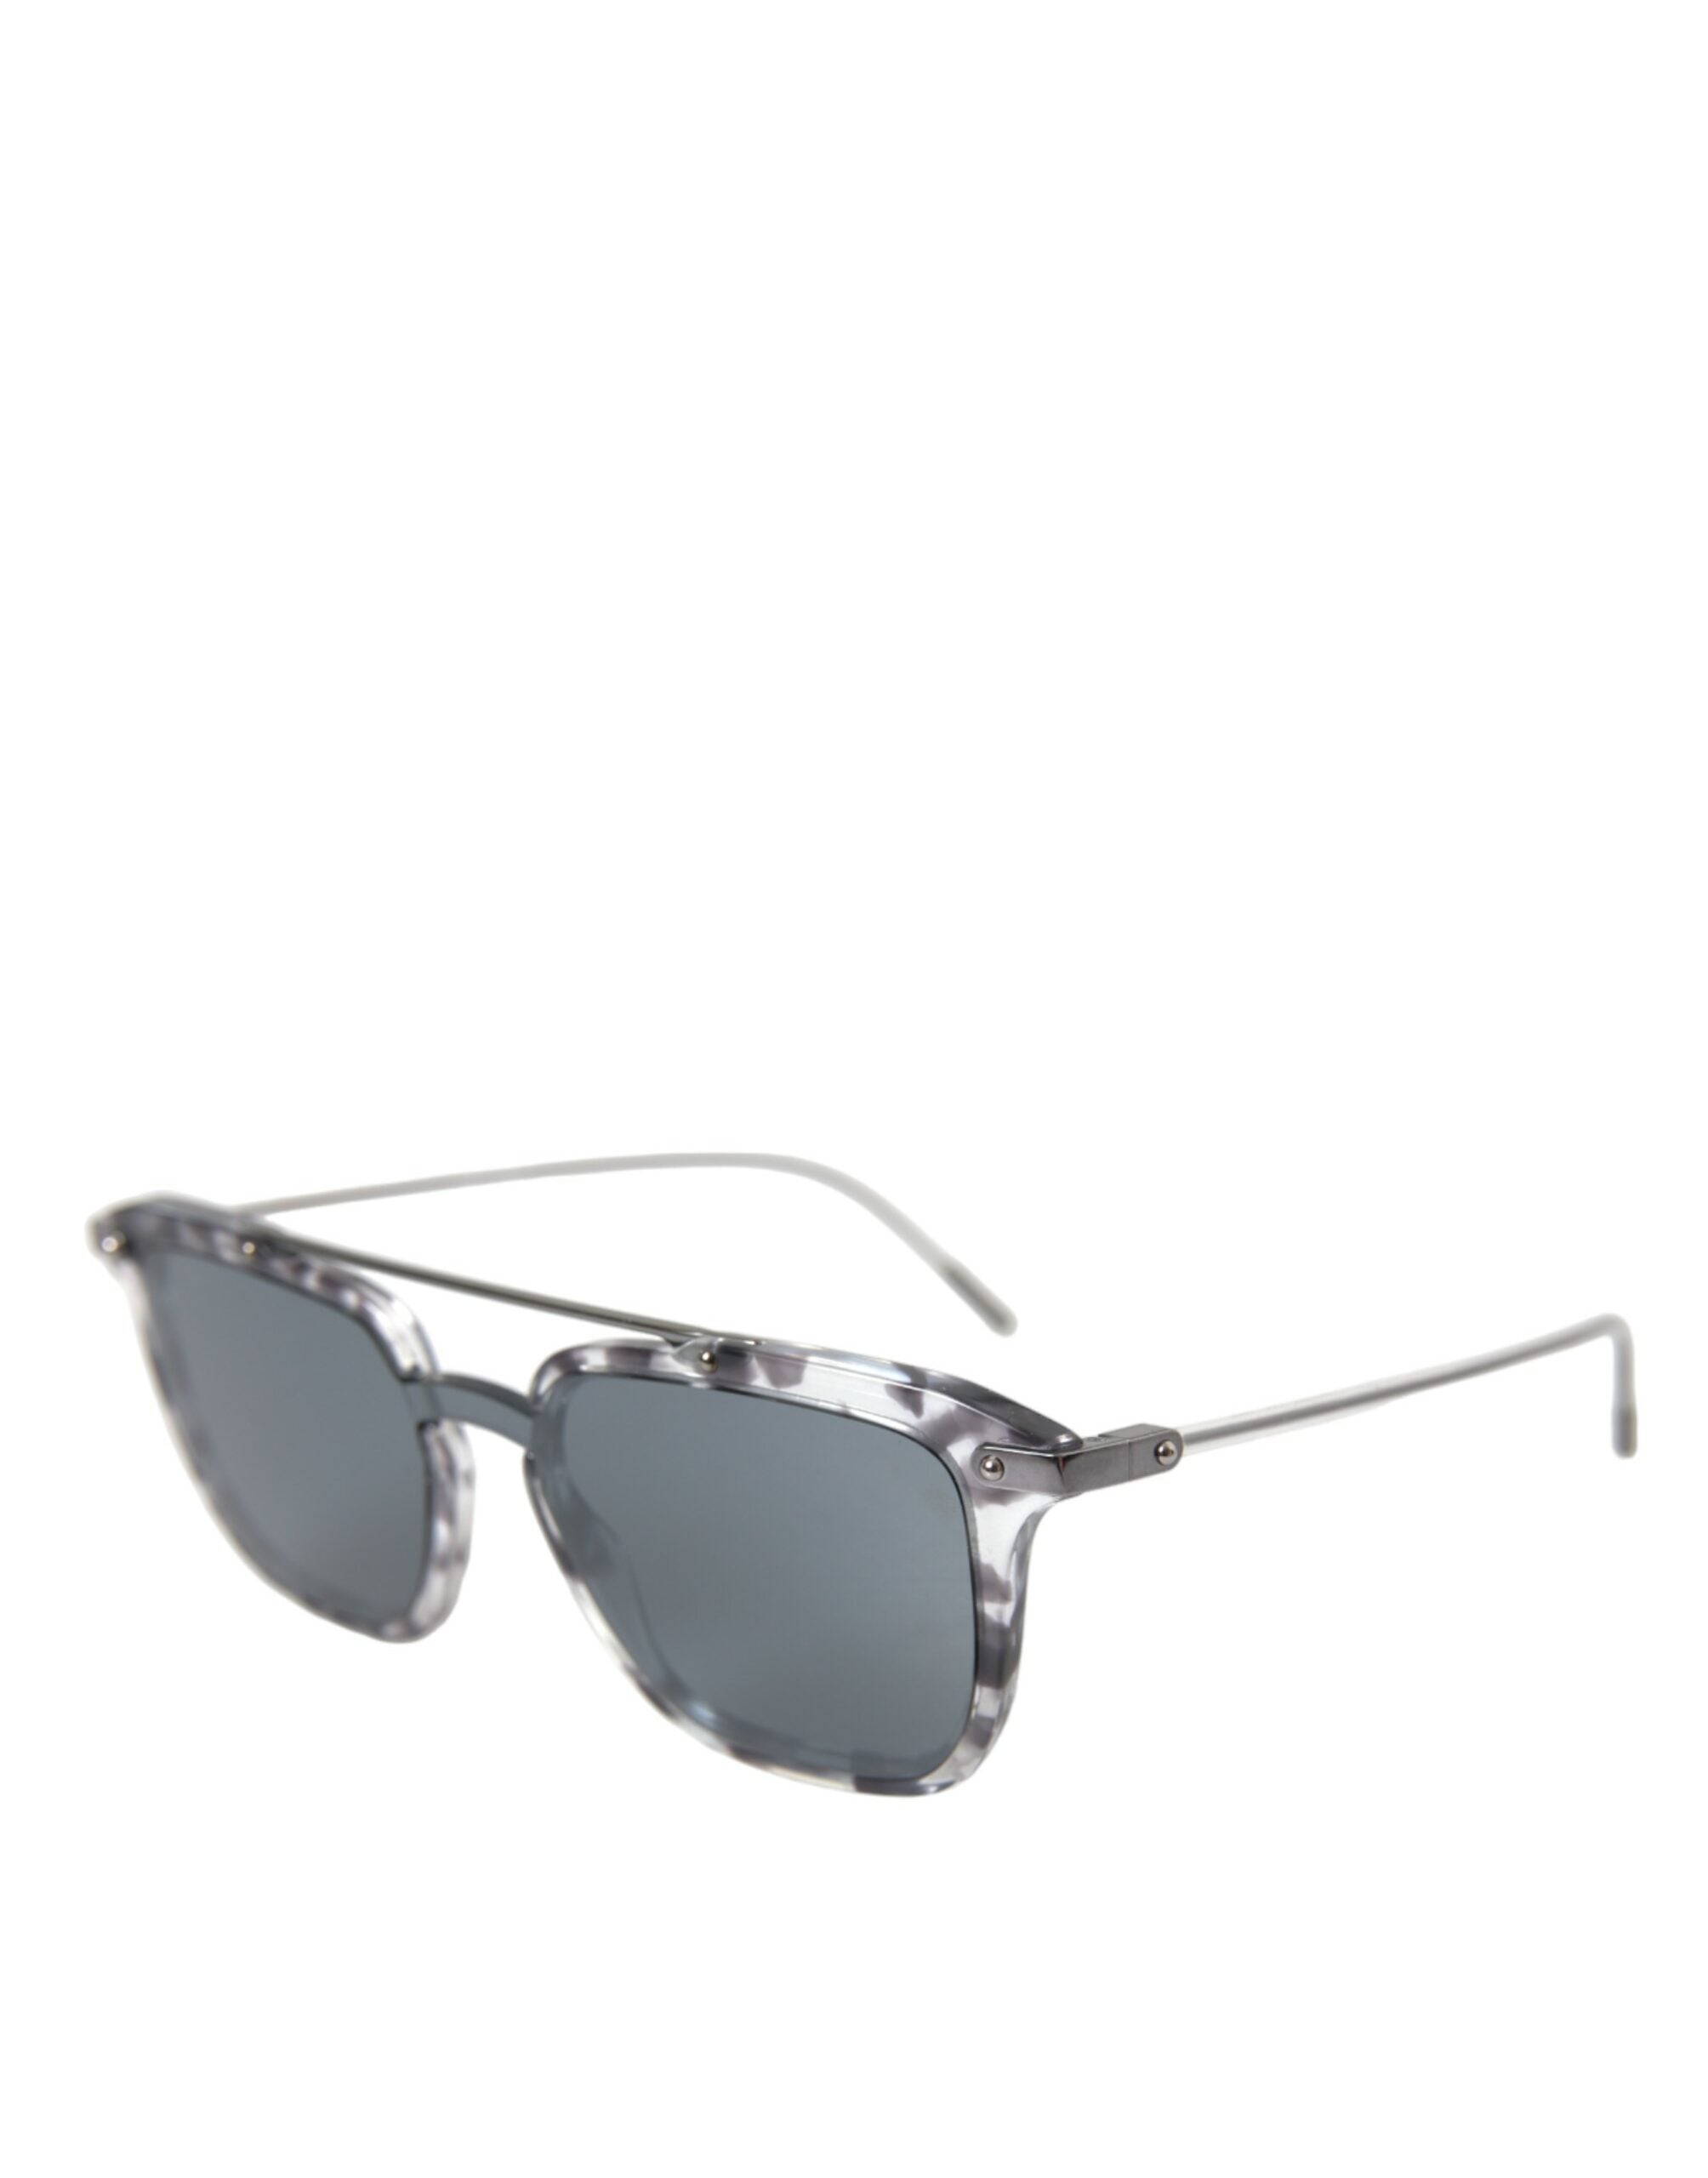 Dolce & Gabbana Sleek Grey Acetate Men's Sunglasses